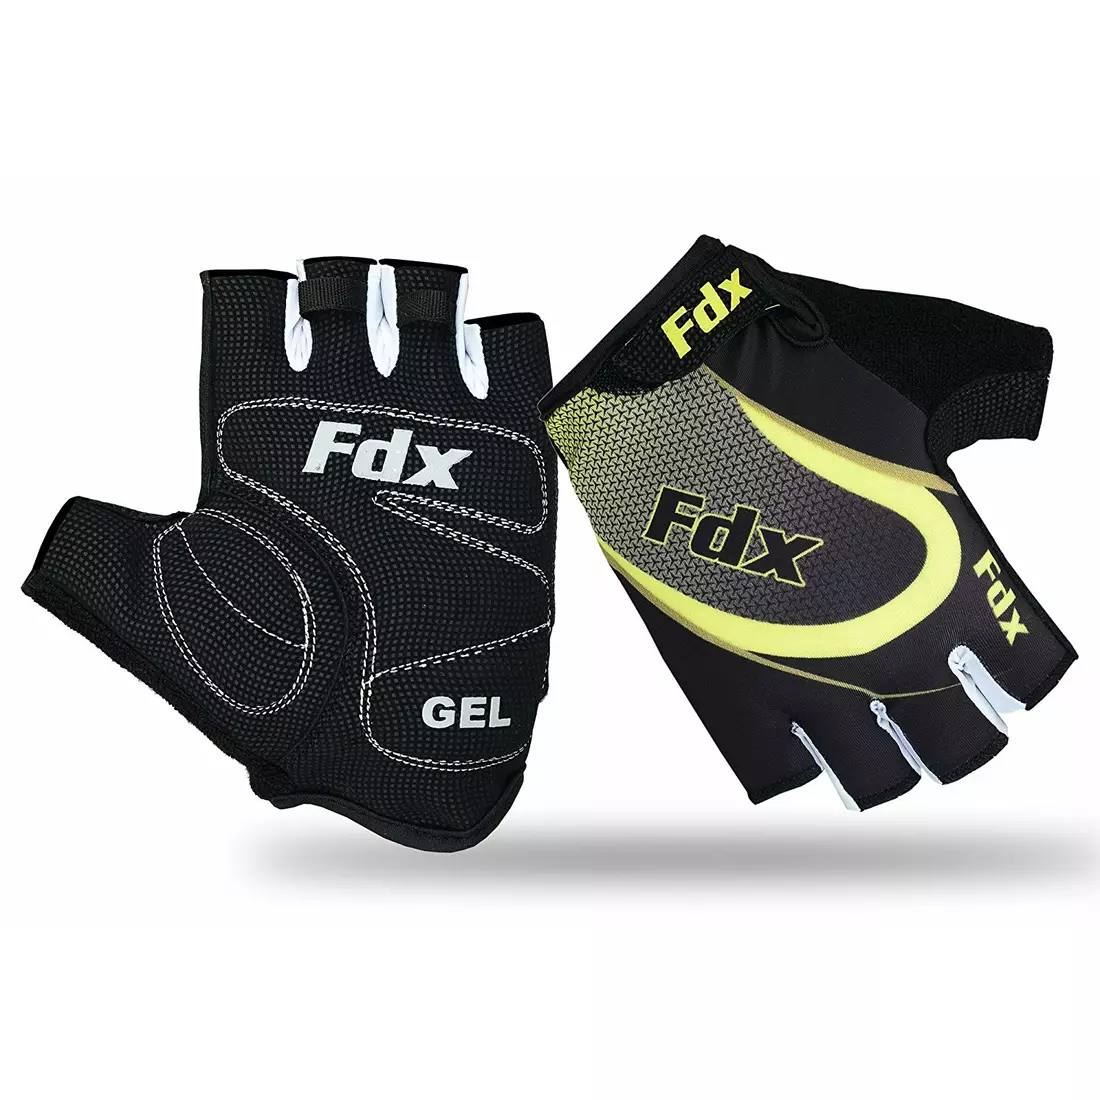 Pánské cyklistické rukavice FDX 1010 černé a žluté